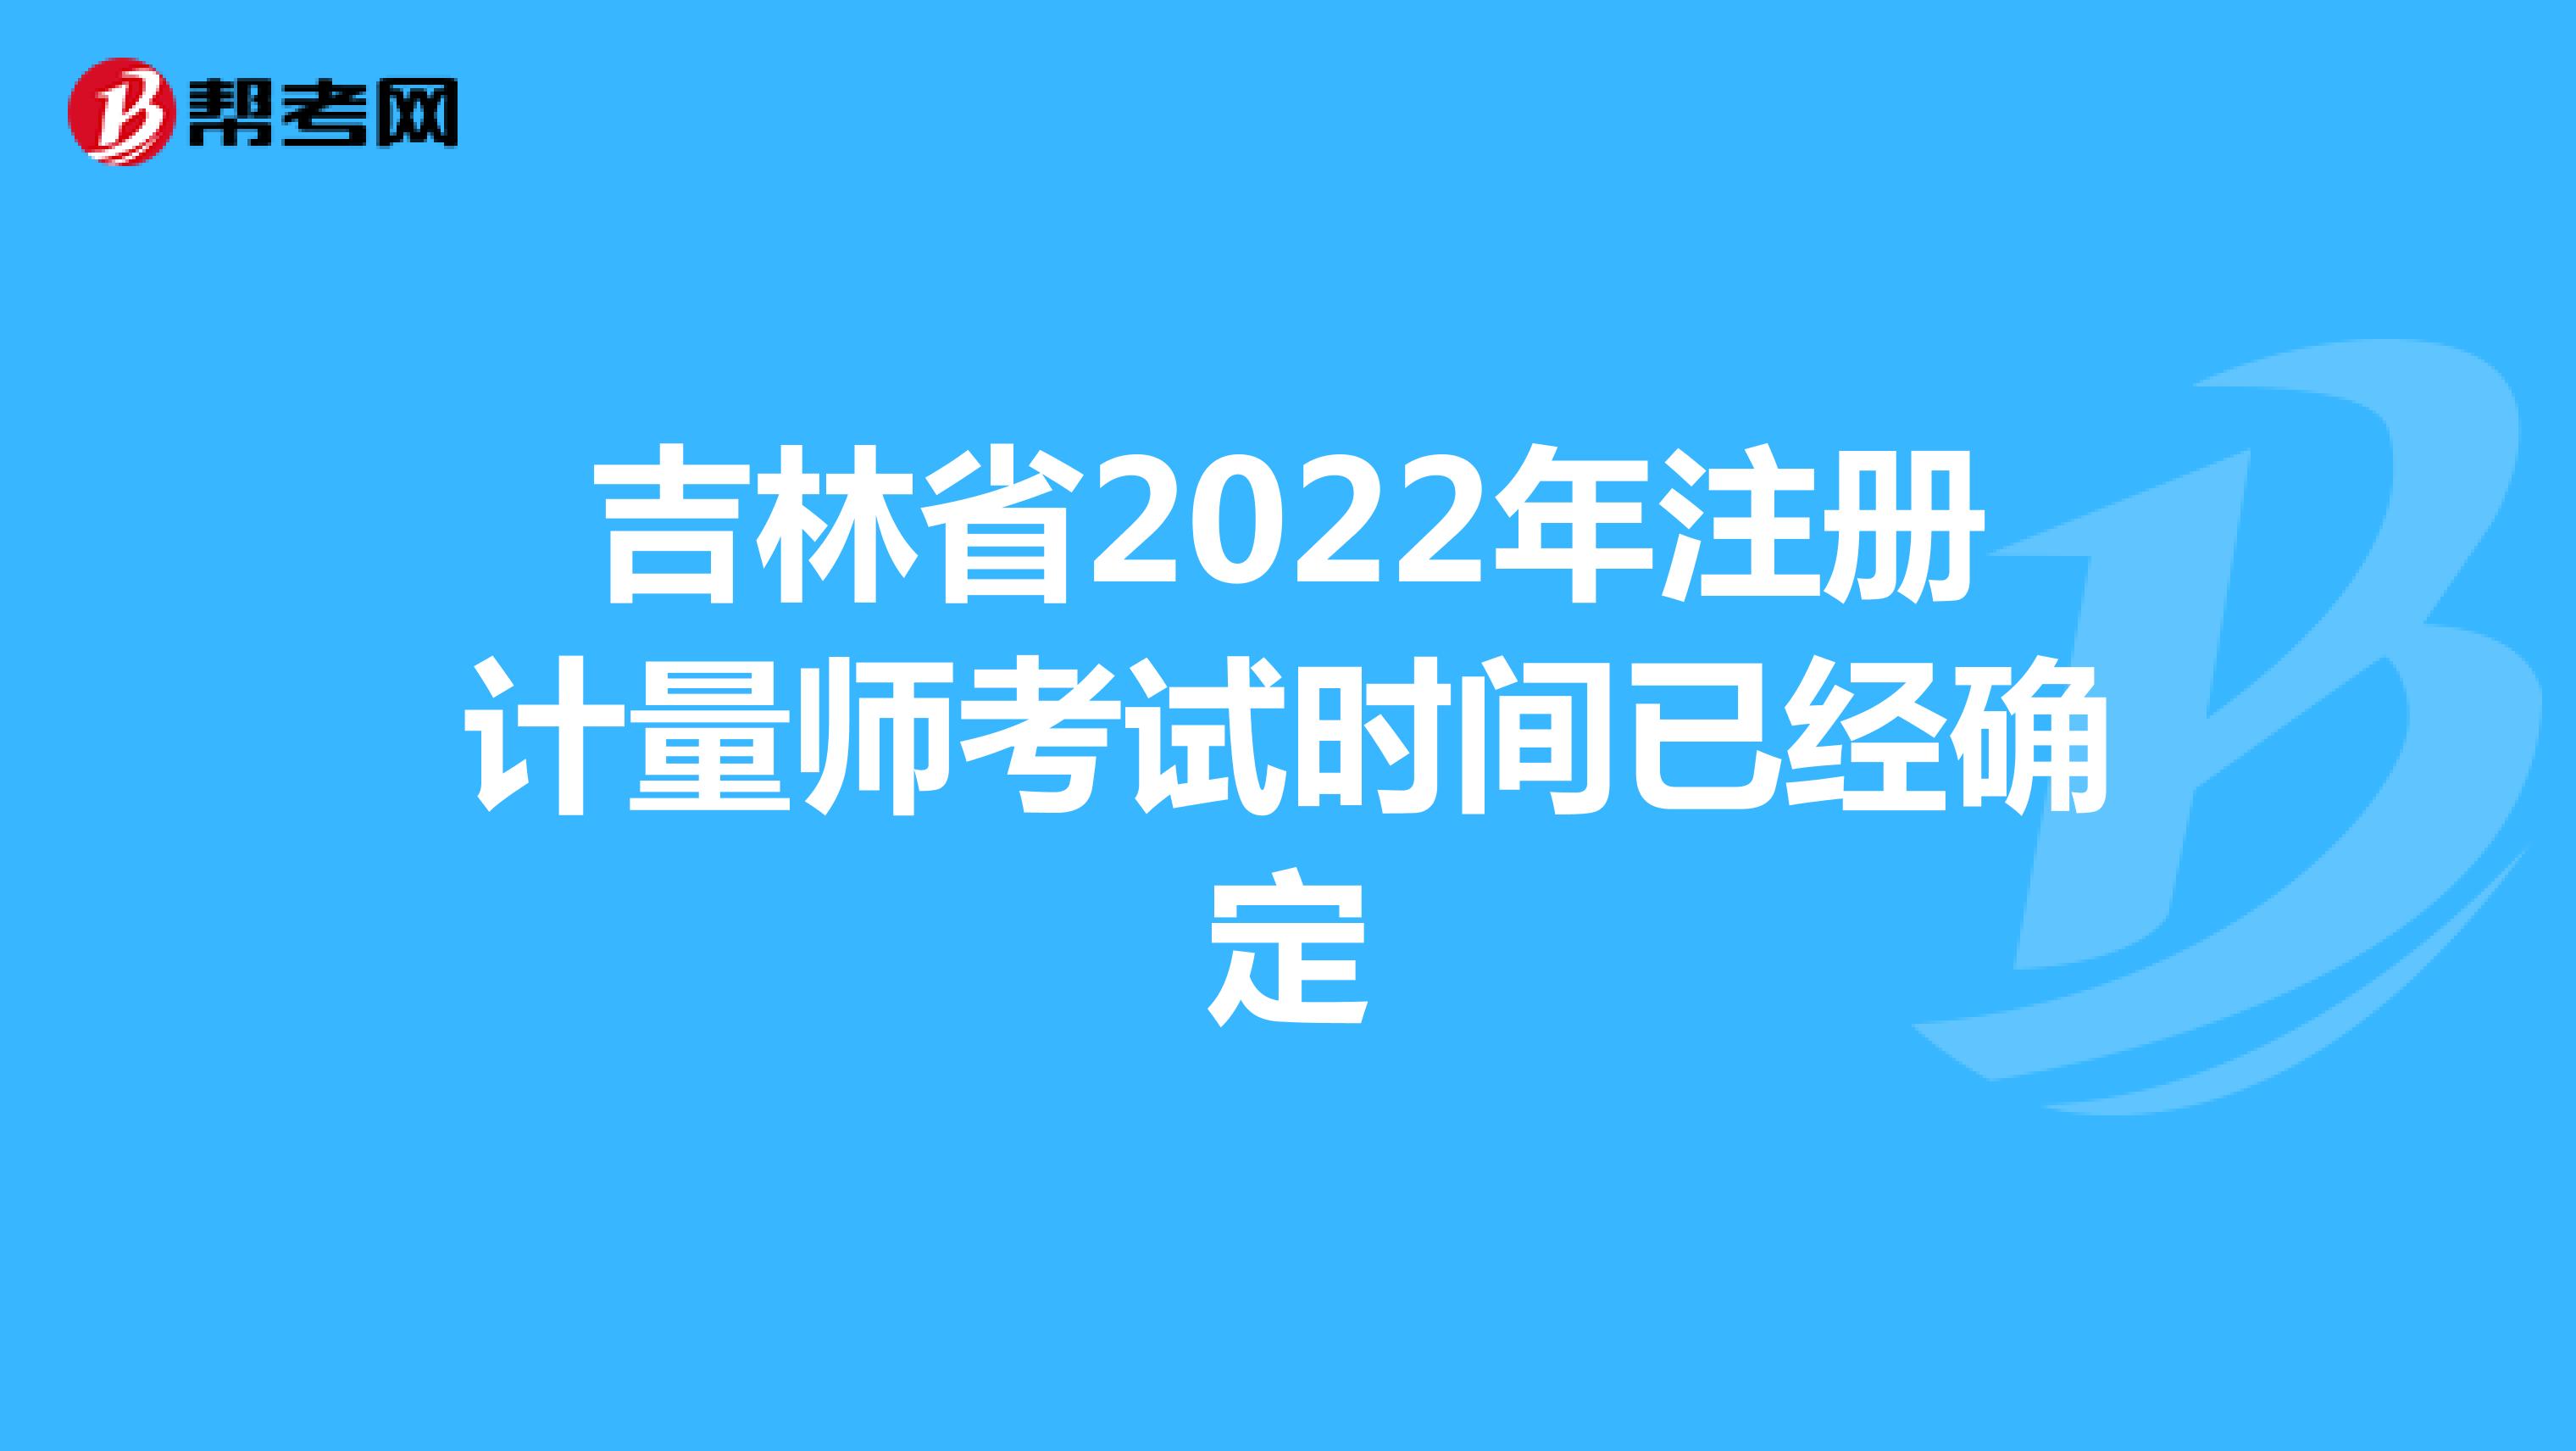 吉林省2022年注册计量师考试时间已经确定